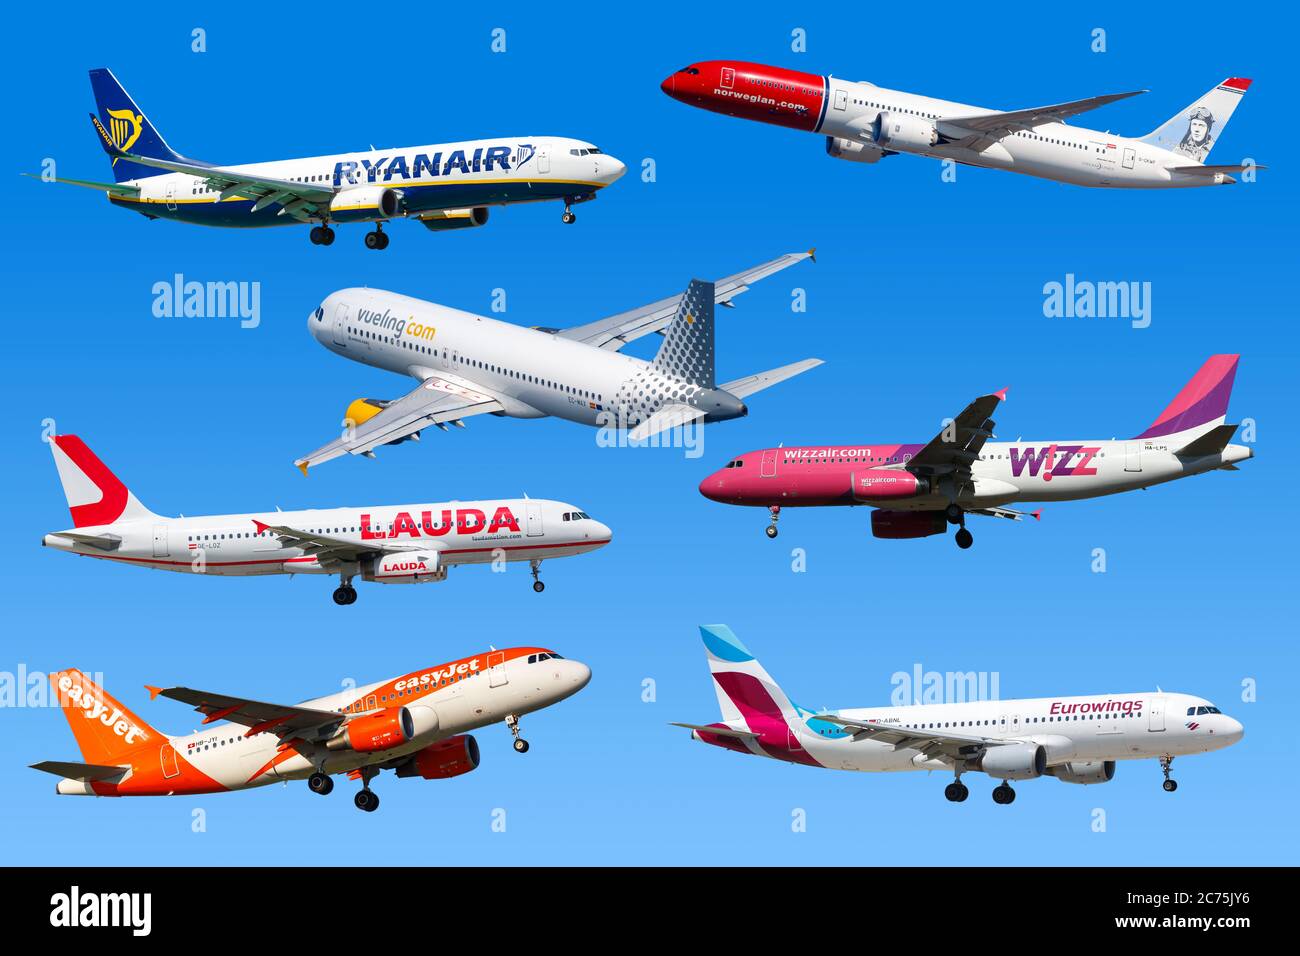 Low airlines e imágenes de resolución - Alamy